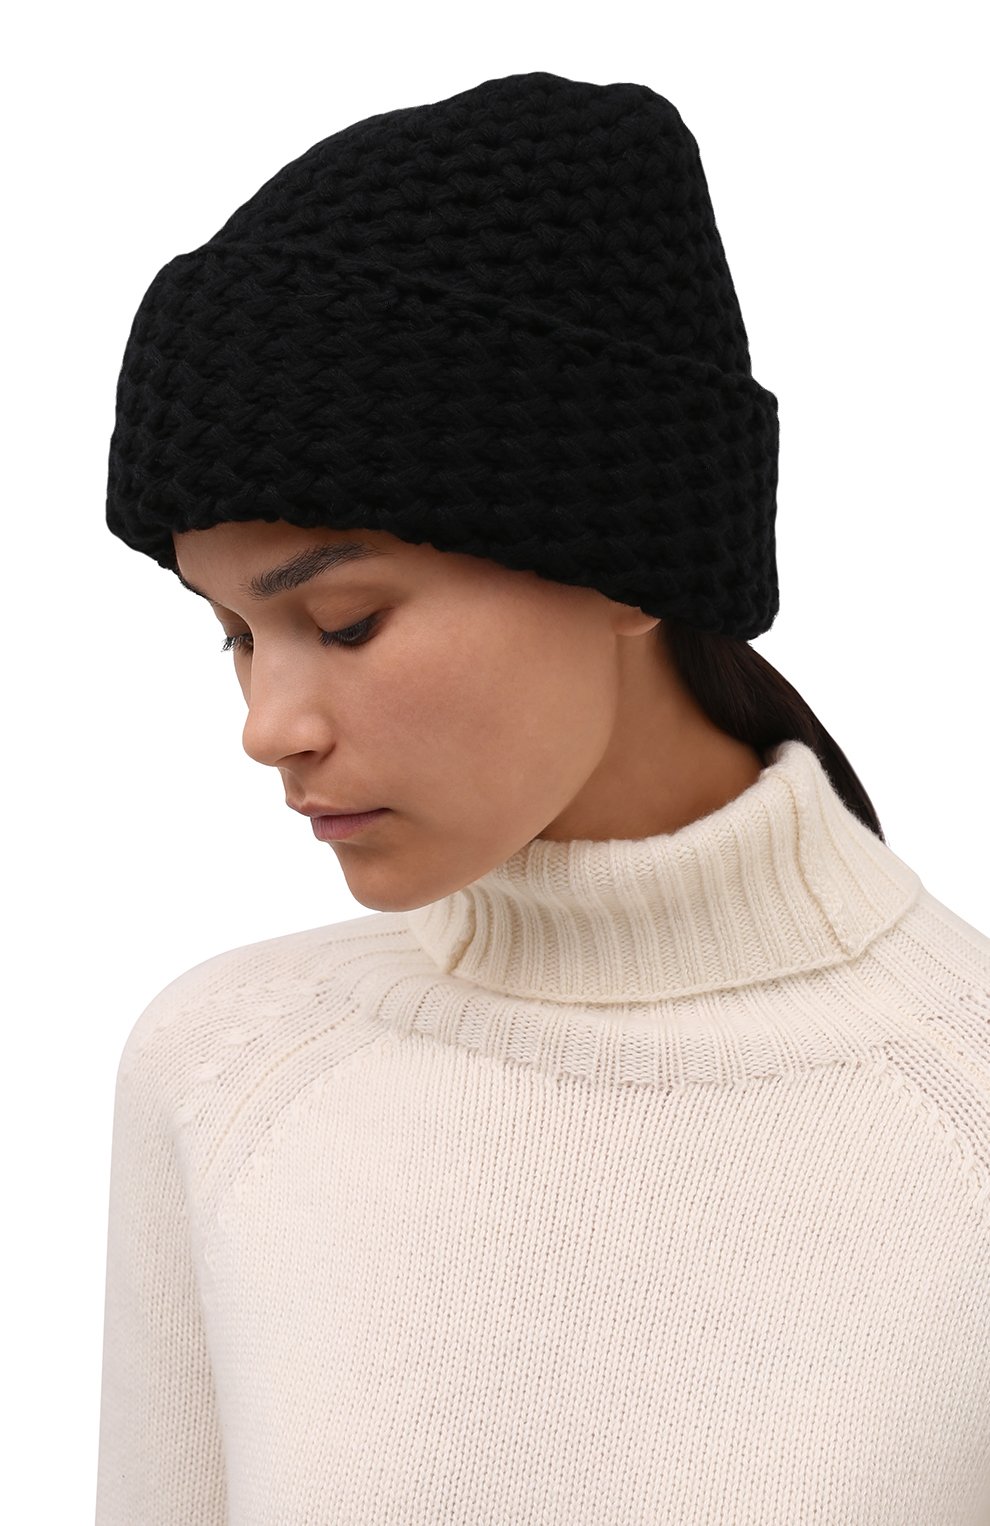 Женская кашемировая шапка INVERNI черного цвета, арт. 4232 CM | Фото 2 (Материал: Текстиль, Кашемир, Шерсть)